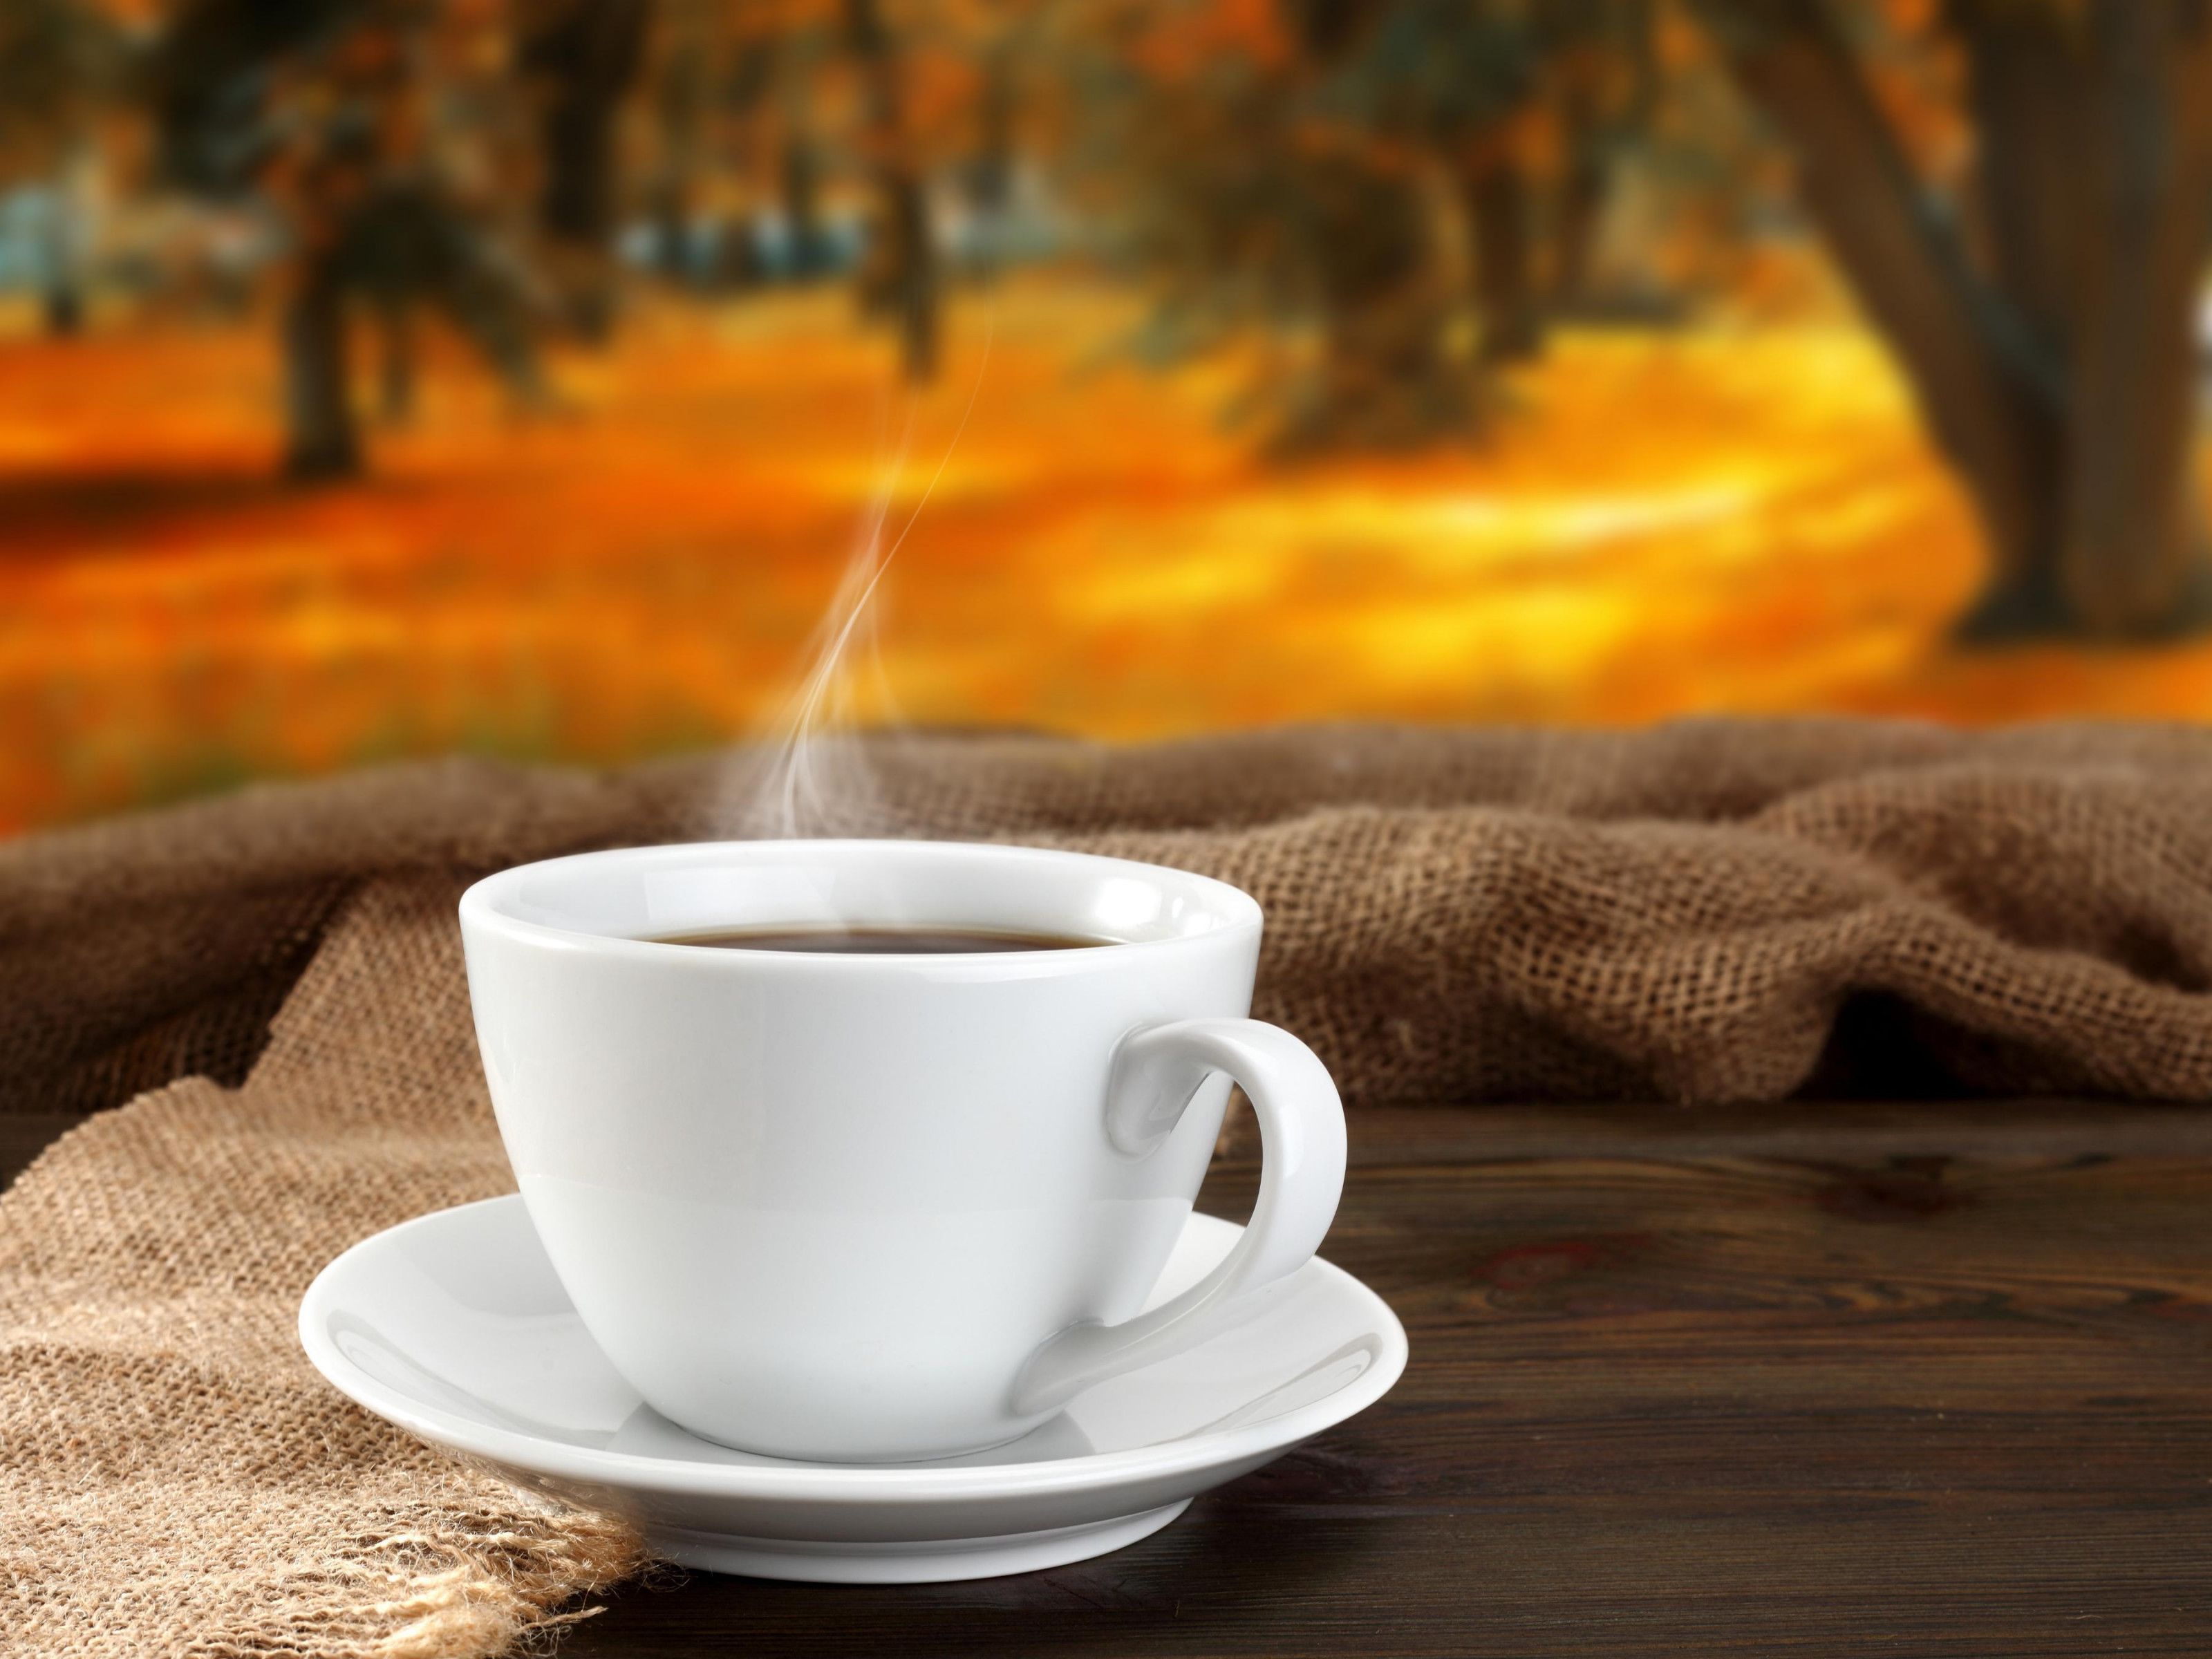 Autumn coffee HD desktop wallpaper, Widescreen, High Definition